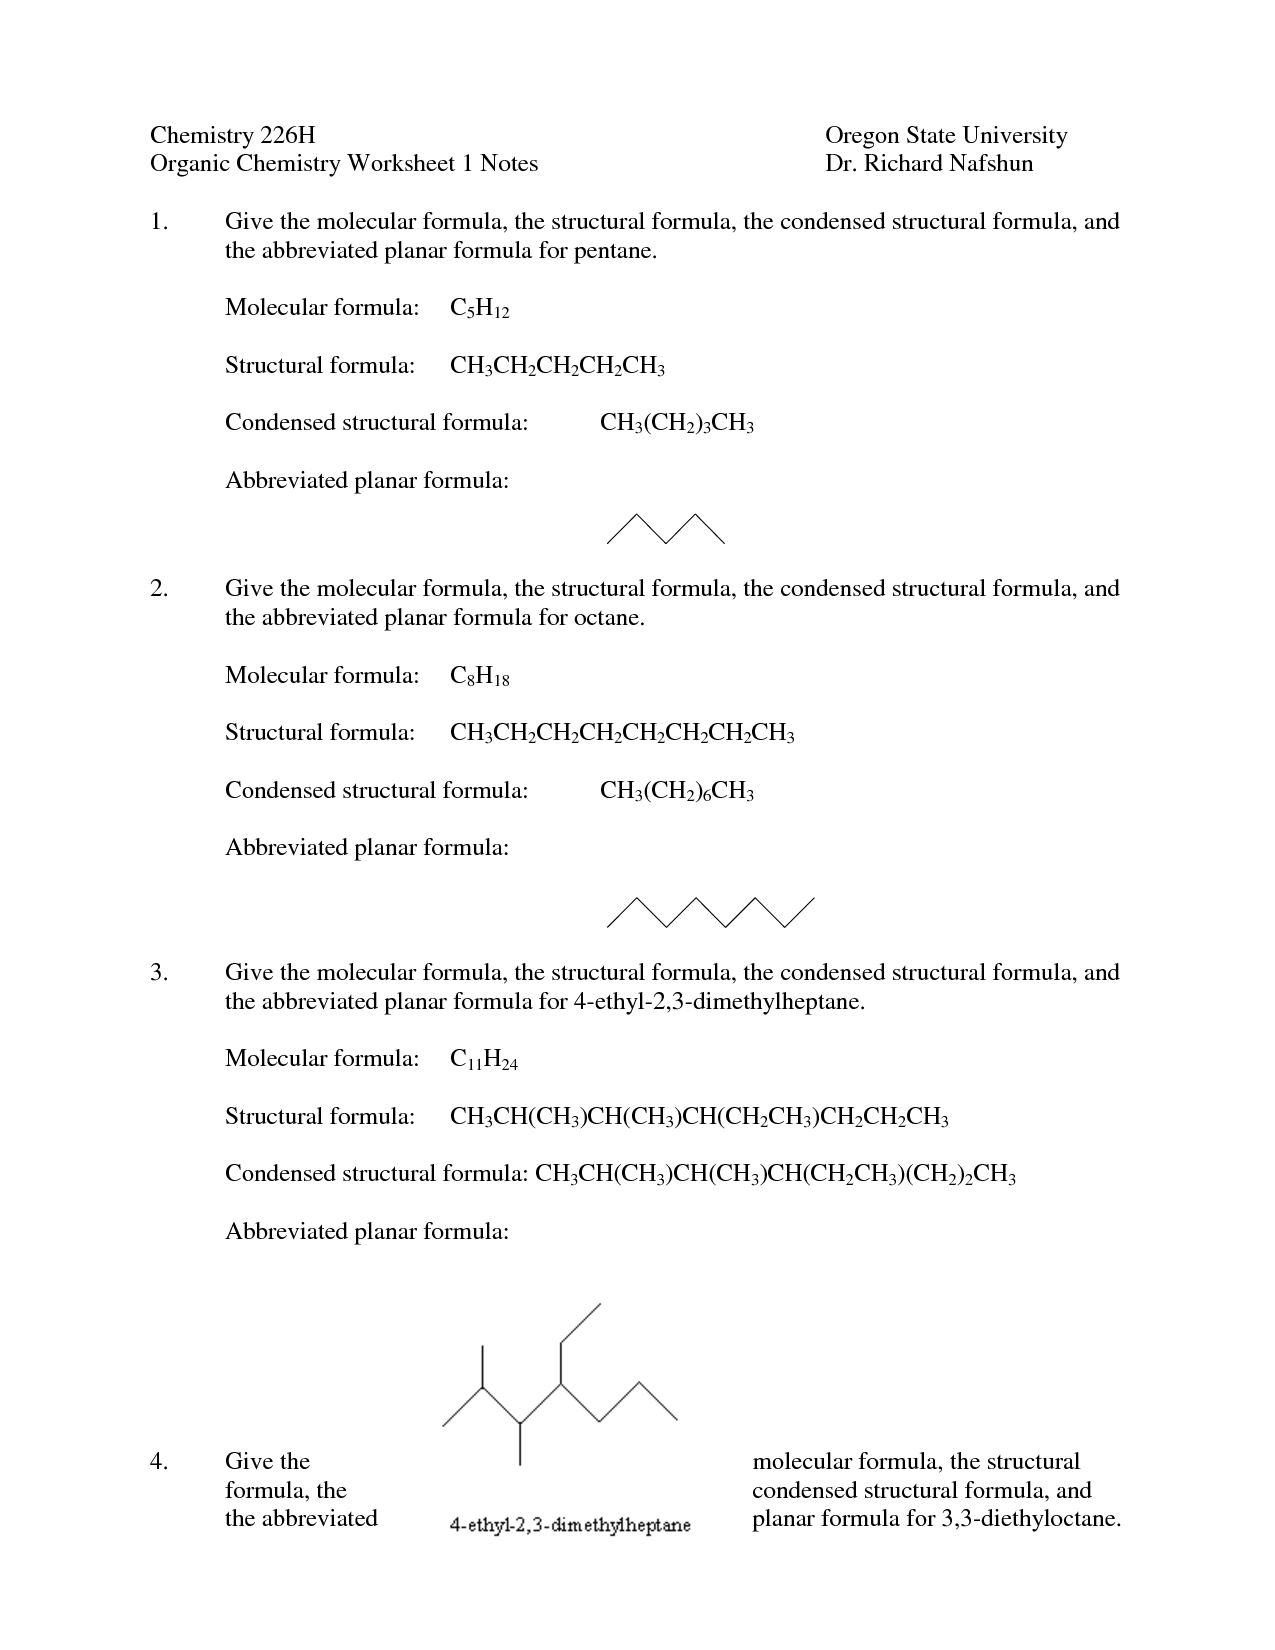 Alcohol Organic Chemistry Worksheet Image